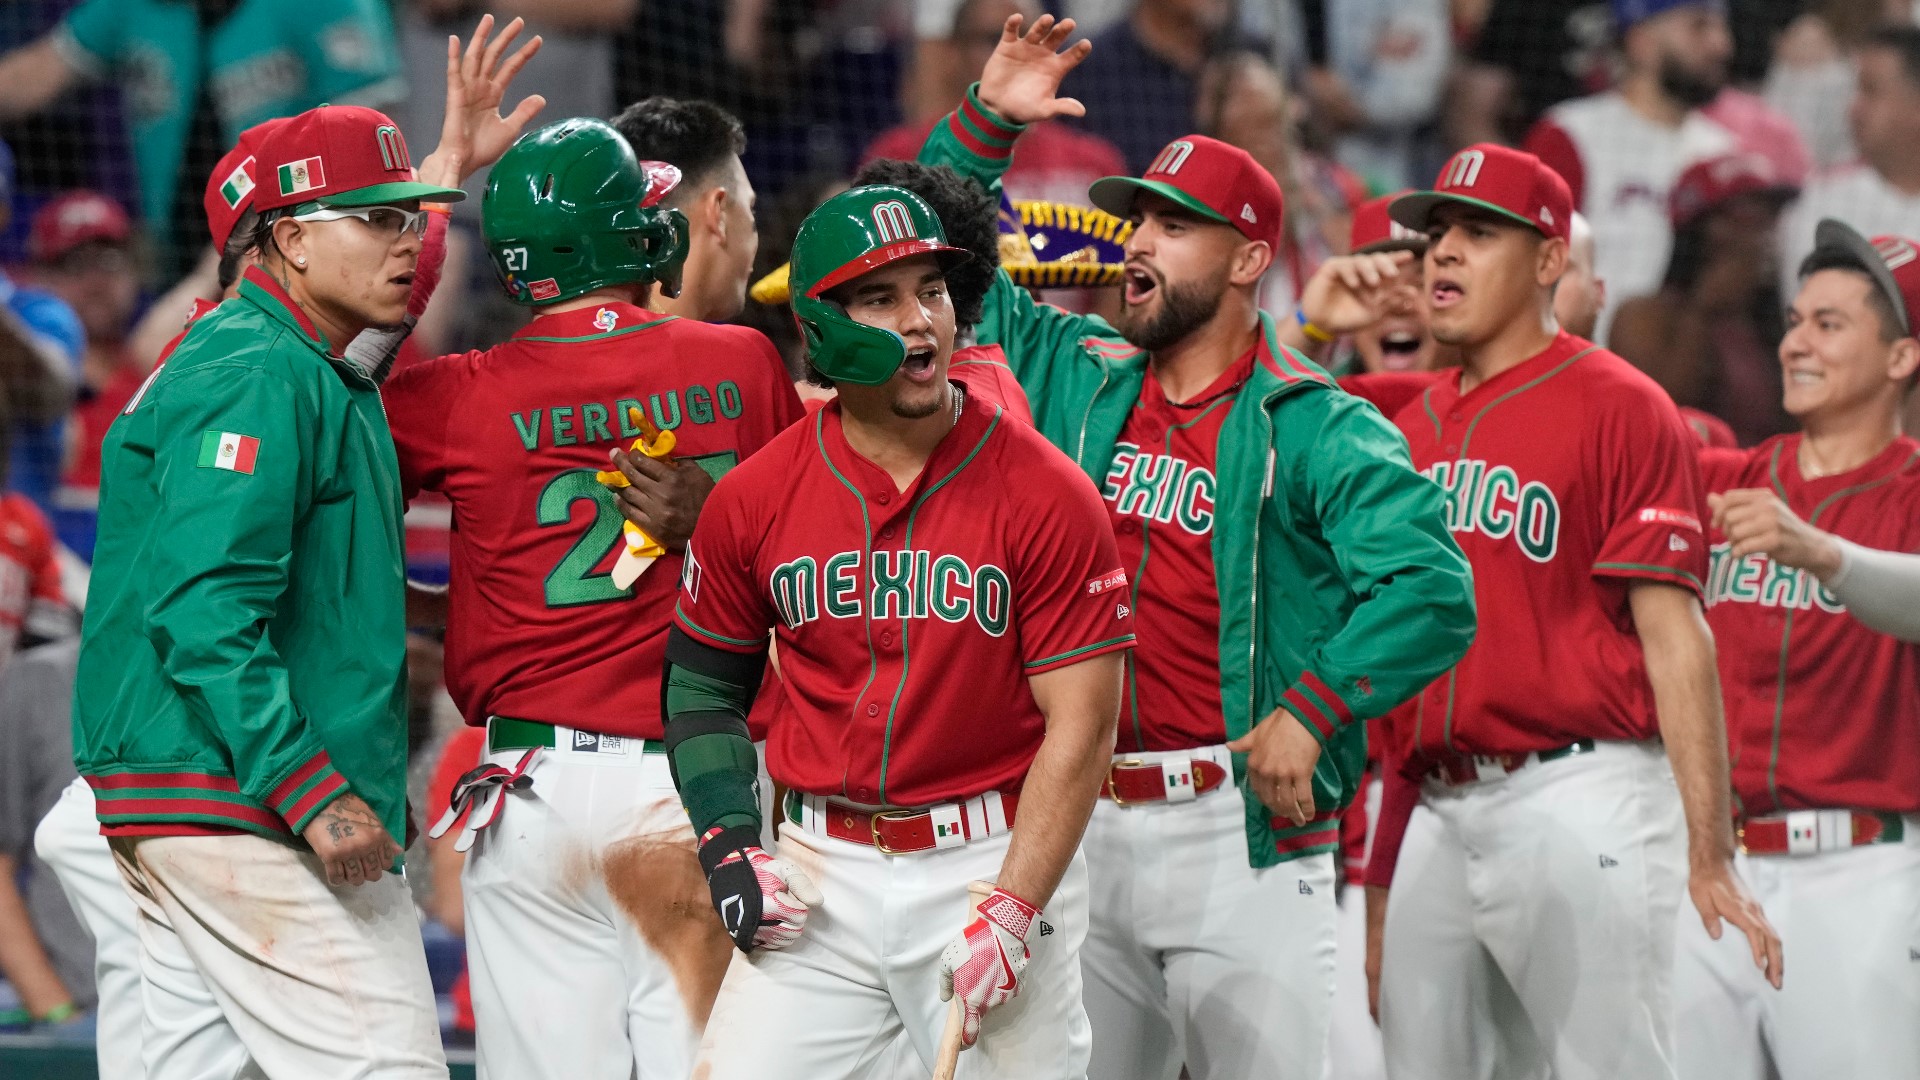 La selección mexicana de béisbol se enfrentará al equipo japones para conocer a la novena que se enfrentará a Estados Unidos en la gran Final.